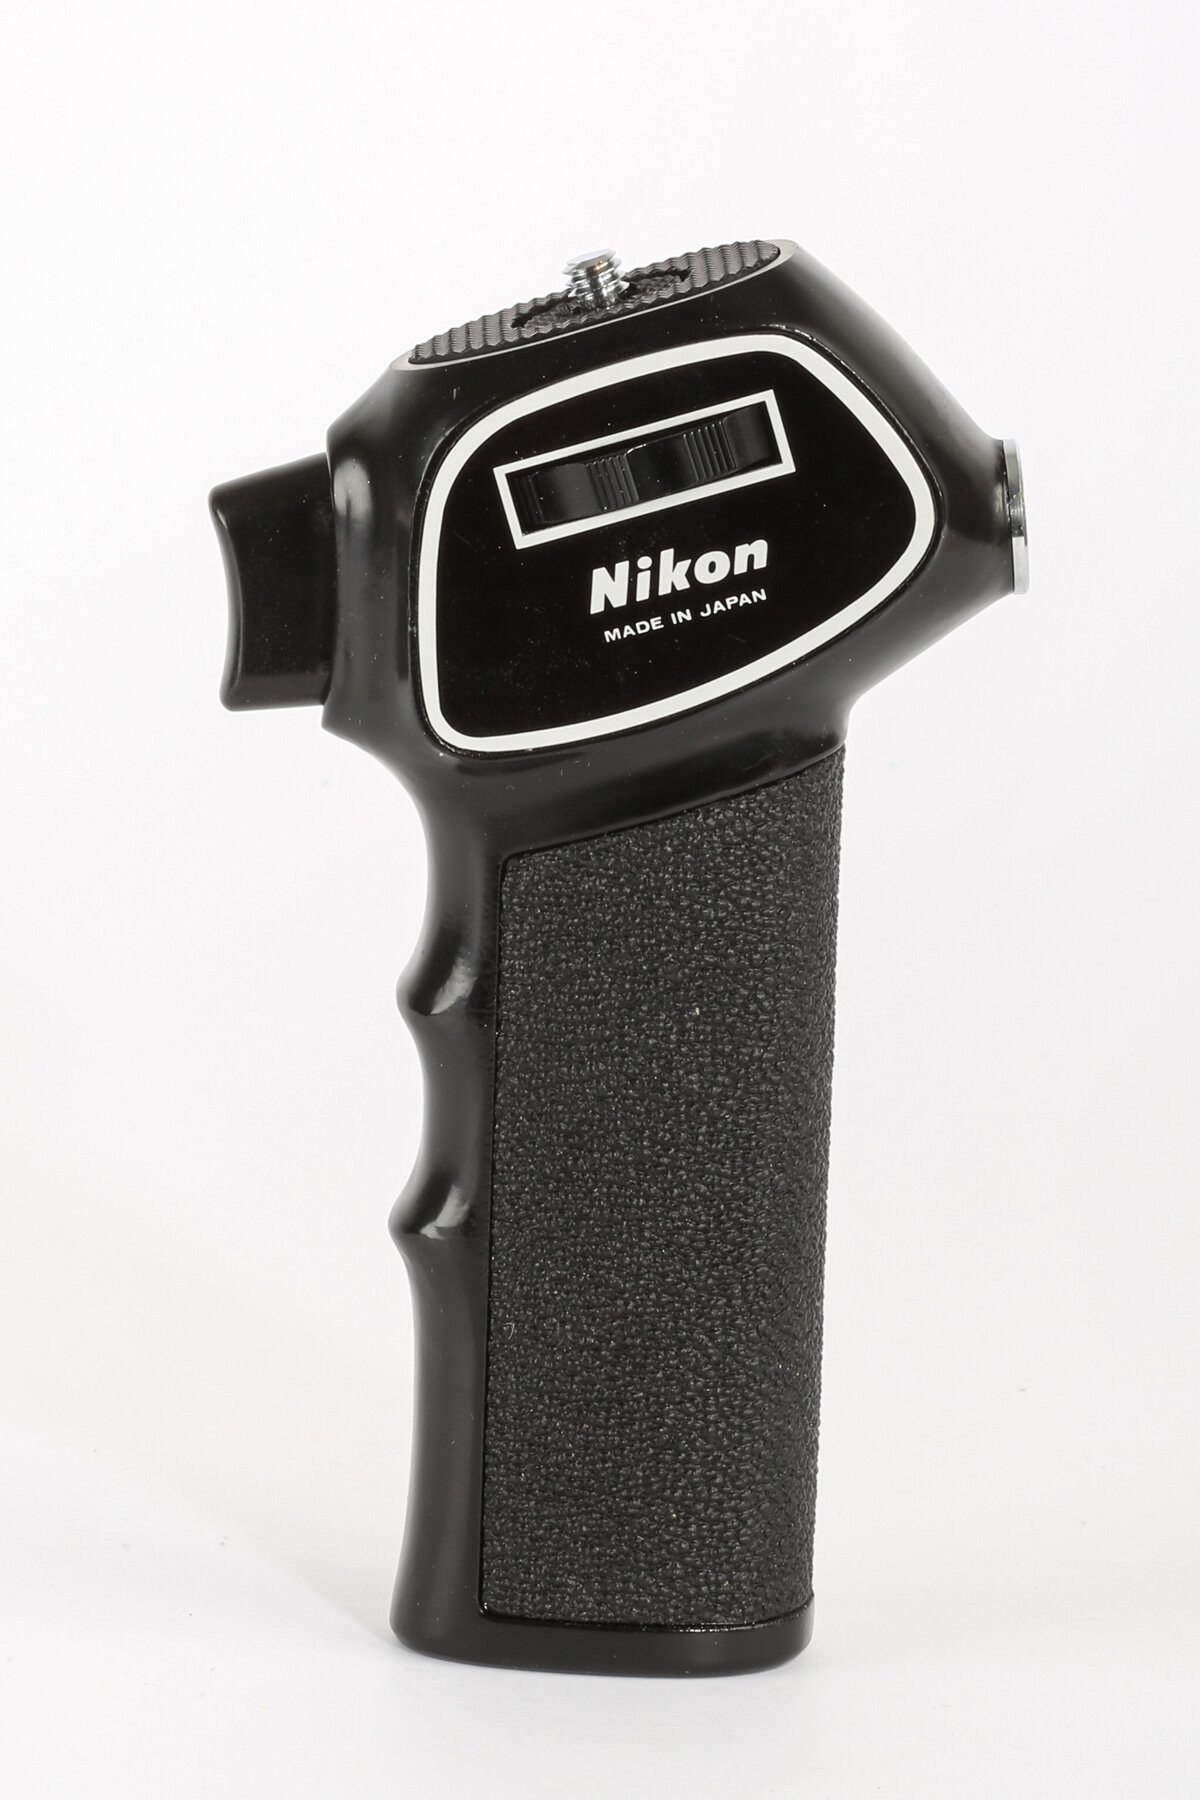 Nikon Pistol grip model 2